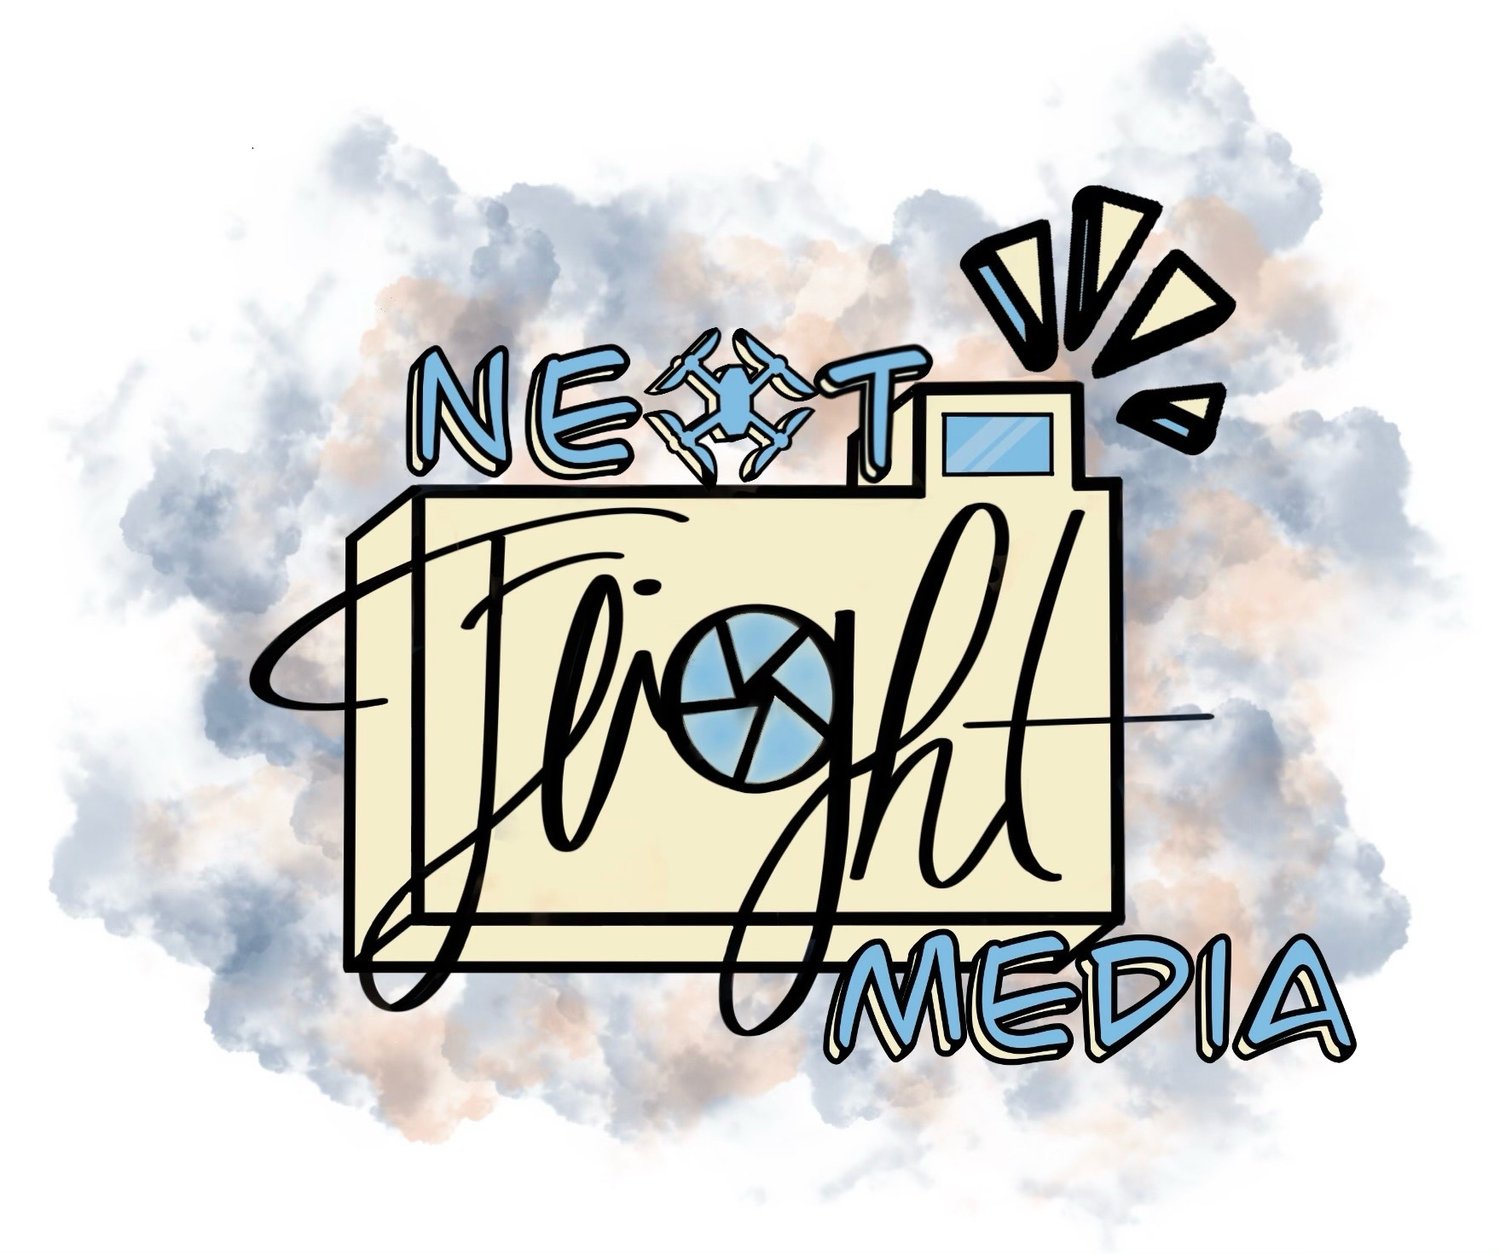 Next Flight Media LLC